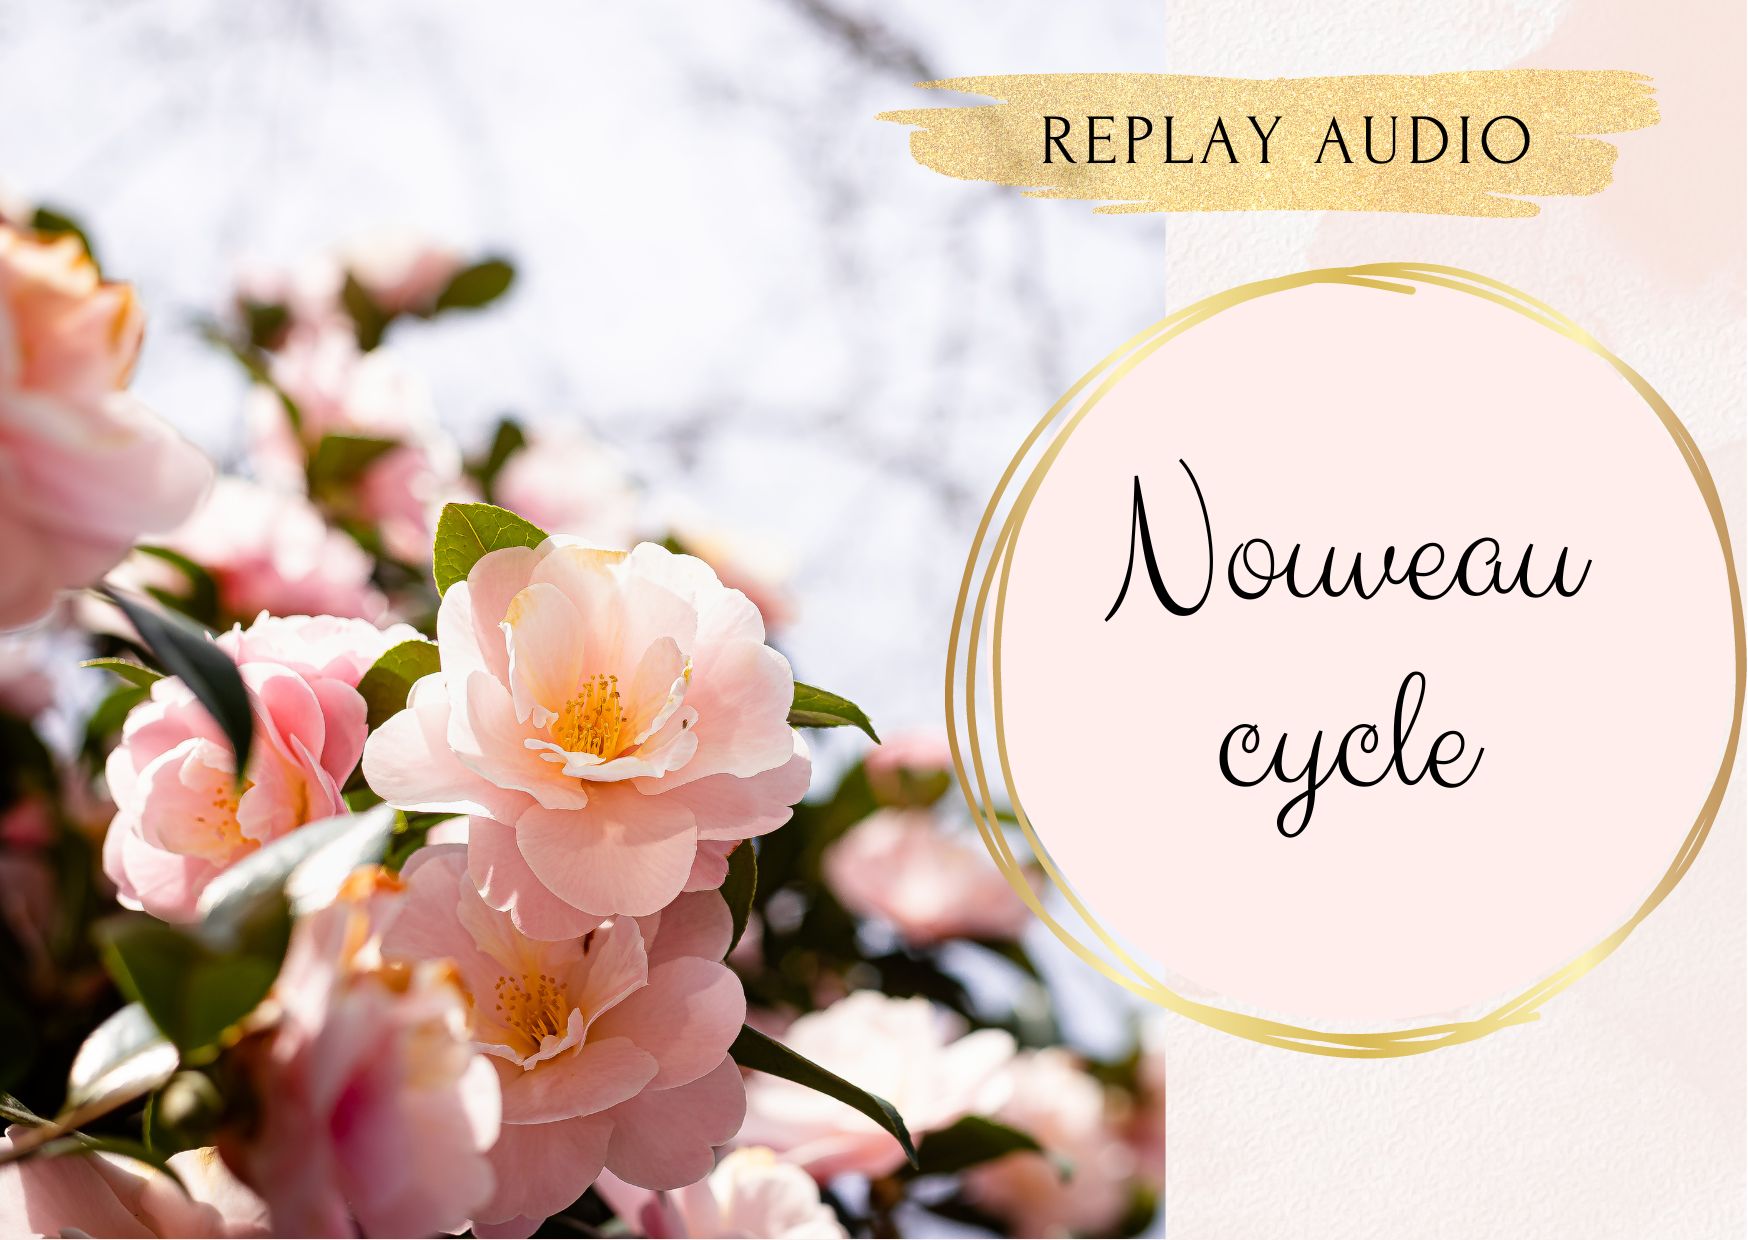 Soin "Nouveau cycle" - audio